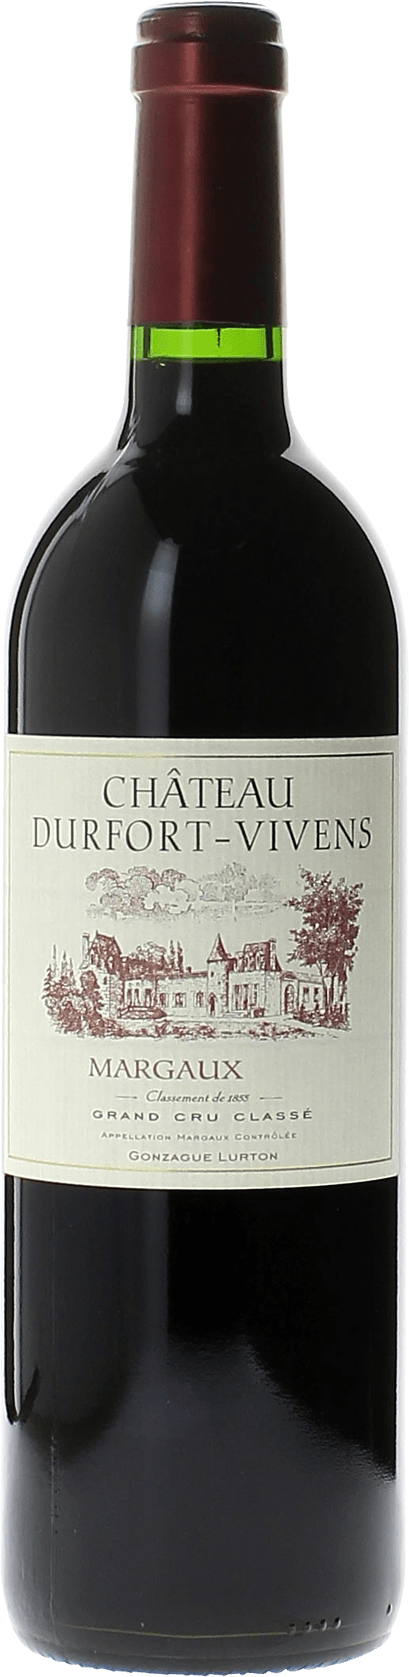 Durfort vivens 2000 2me Grand cru class Margaux, Bordeaux rouge